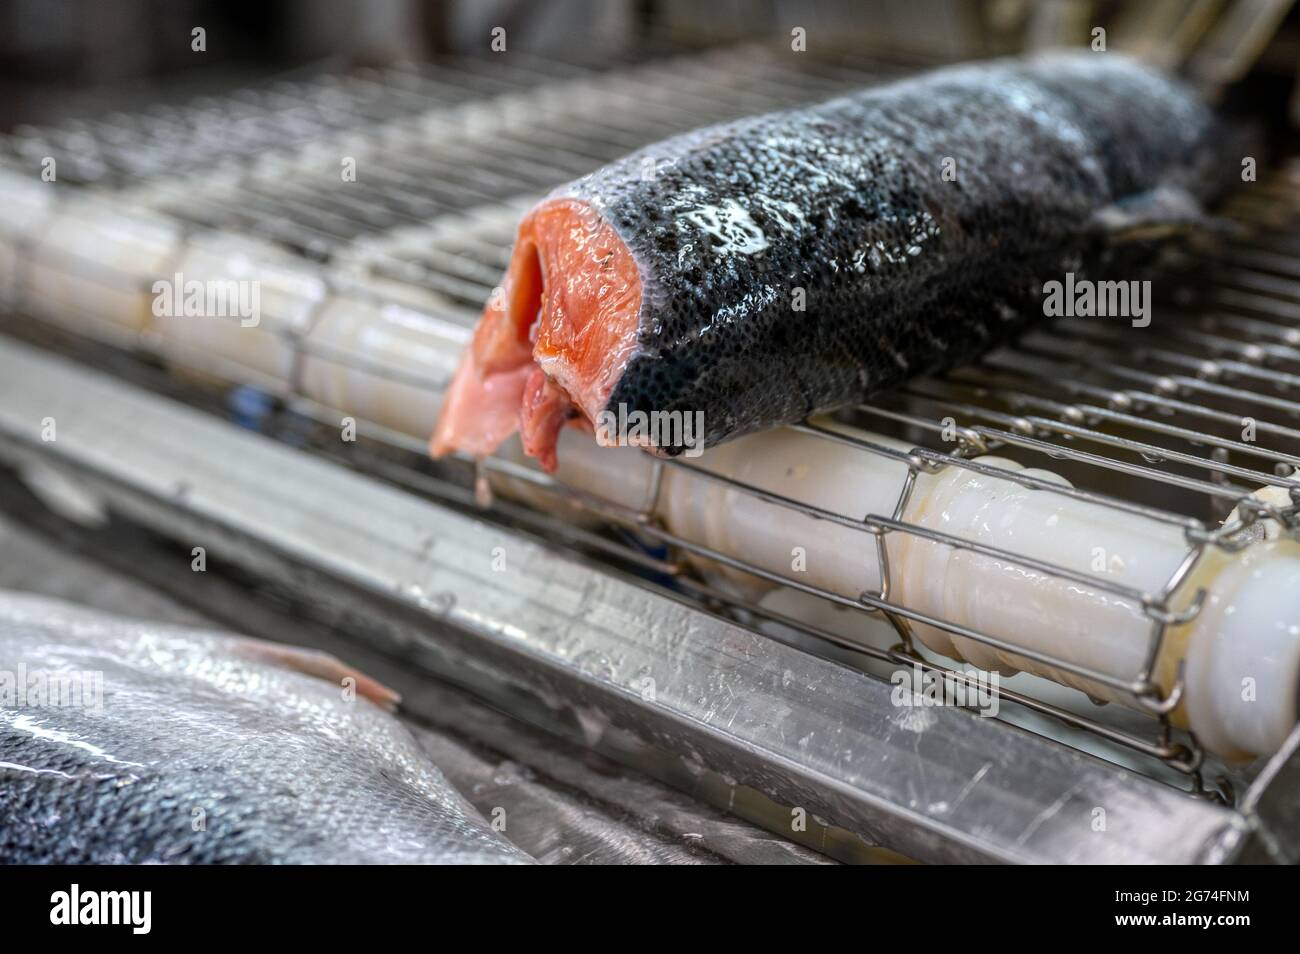 Les carcasses de saumon et de truite sans tête et évidées se trouvent sur une courroie transporteuse. Banque D'Images